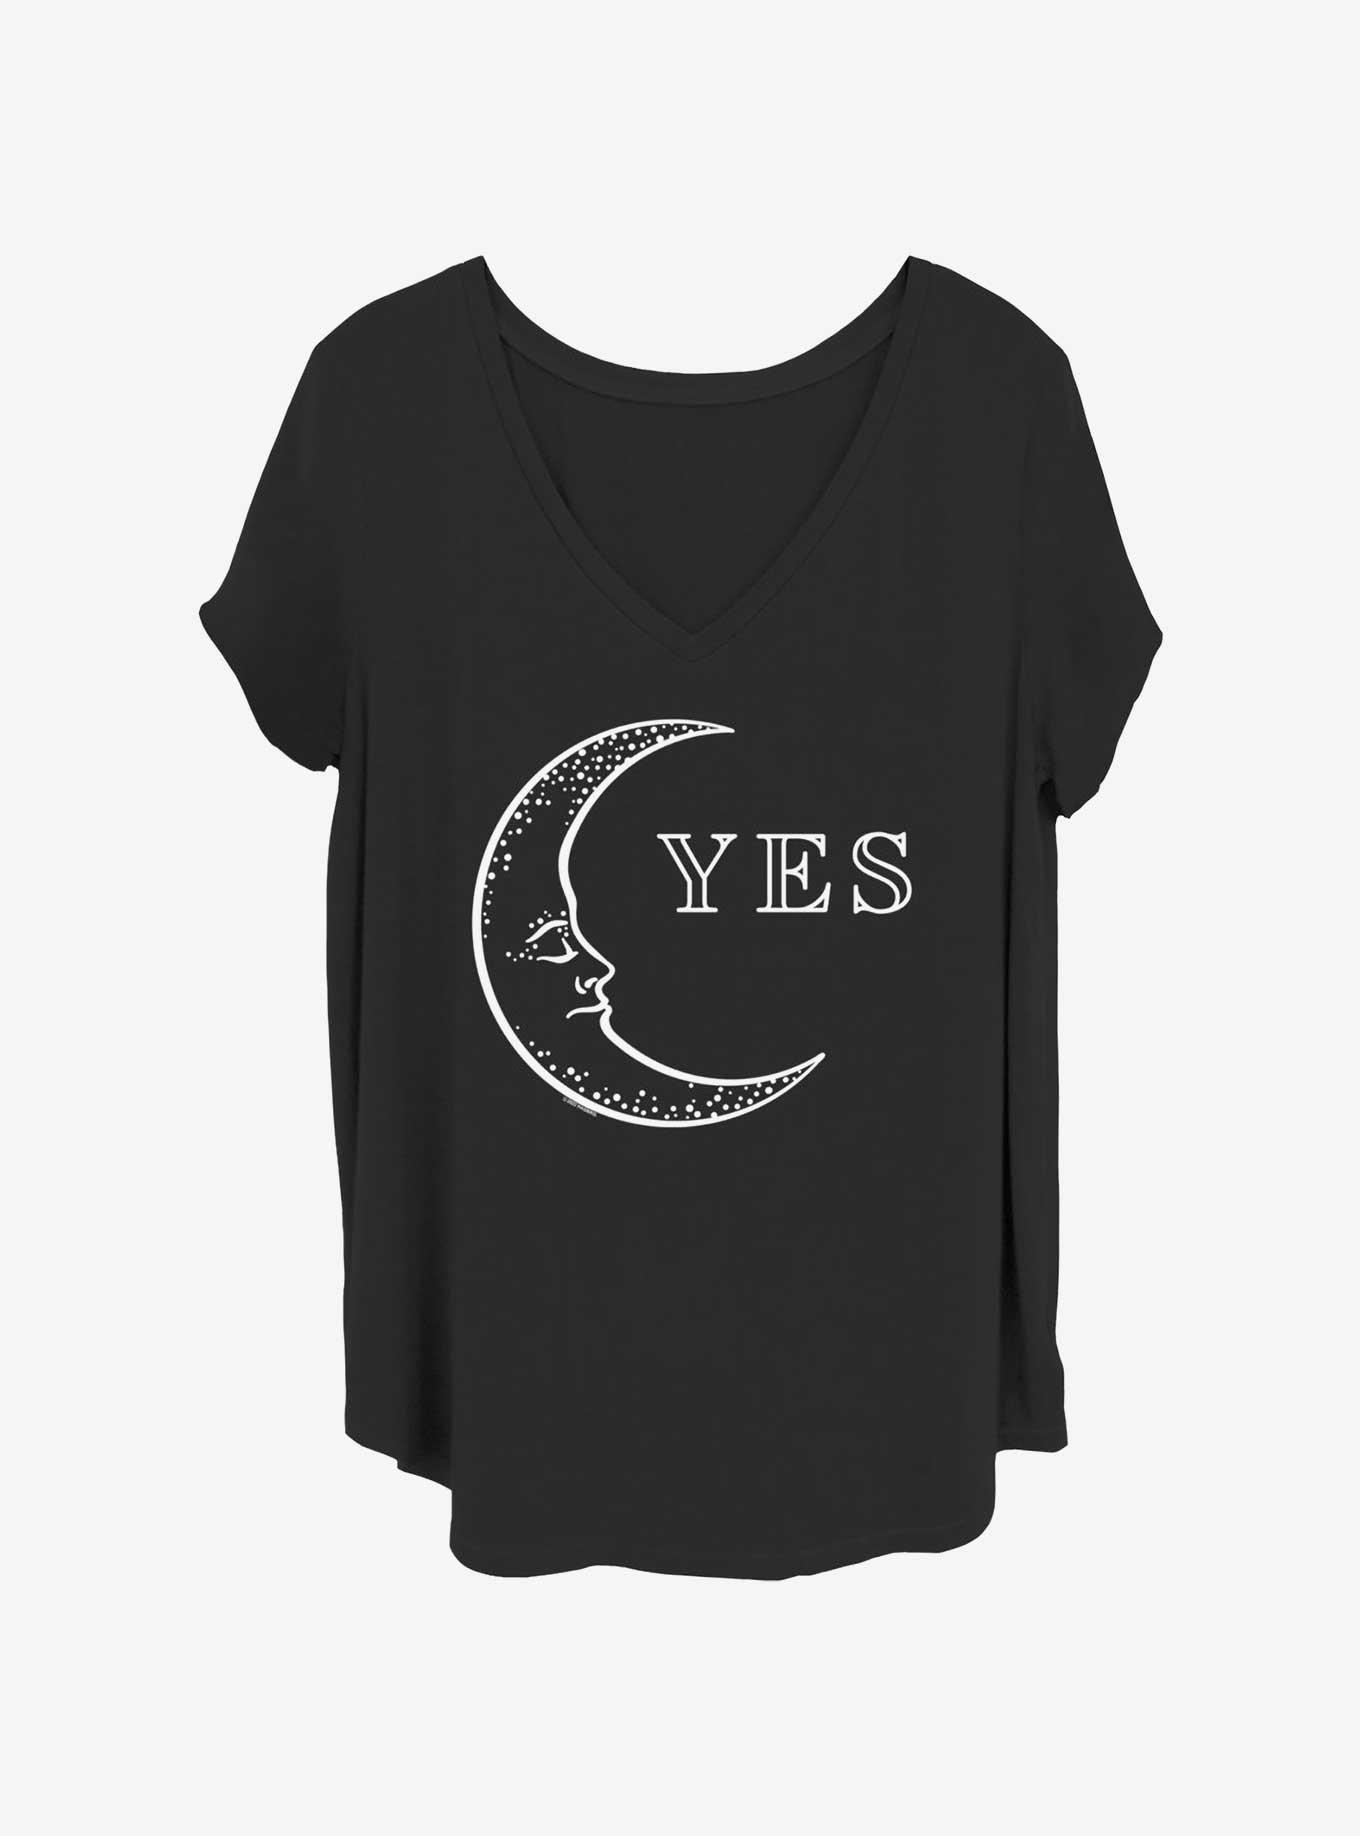 Ouija Moon Yes Girls T-Shirt Plus